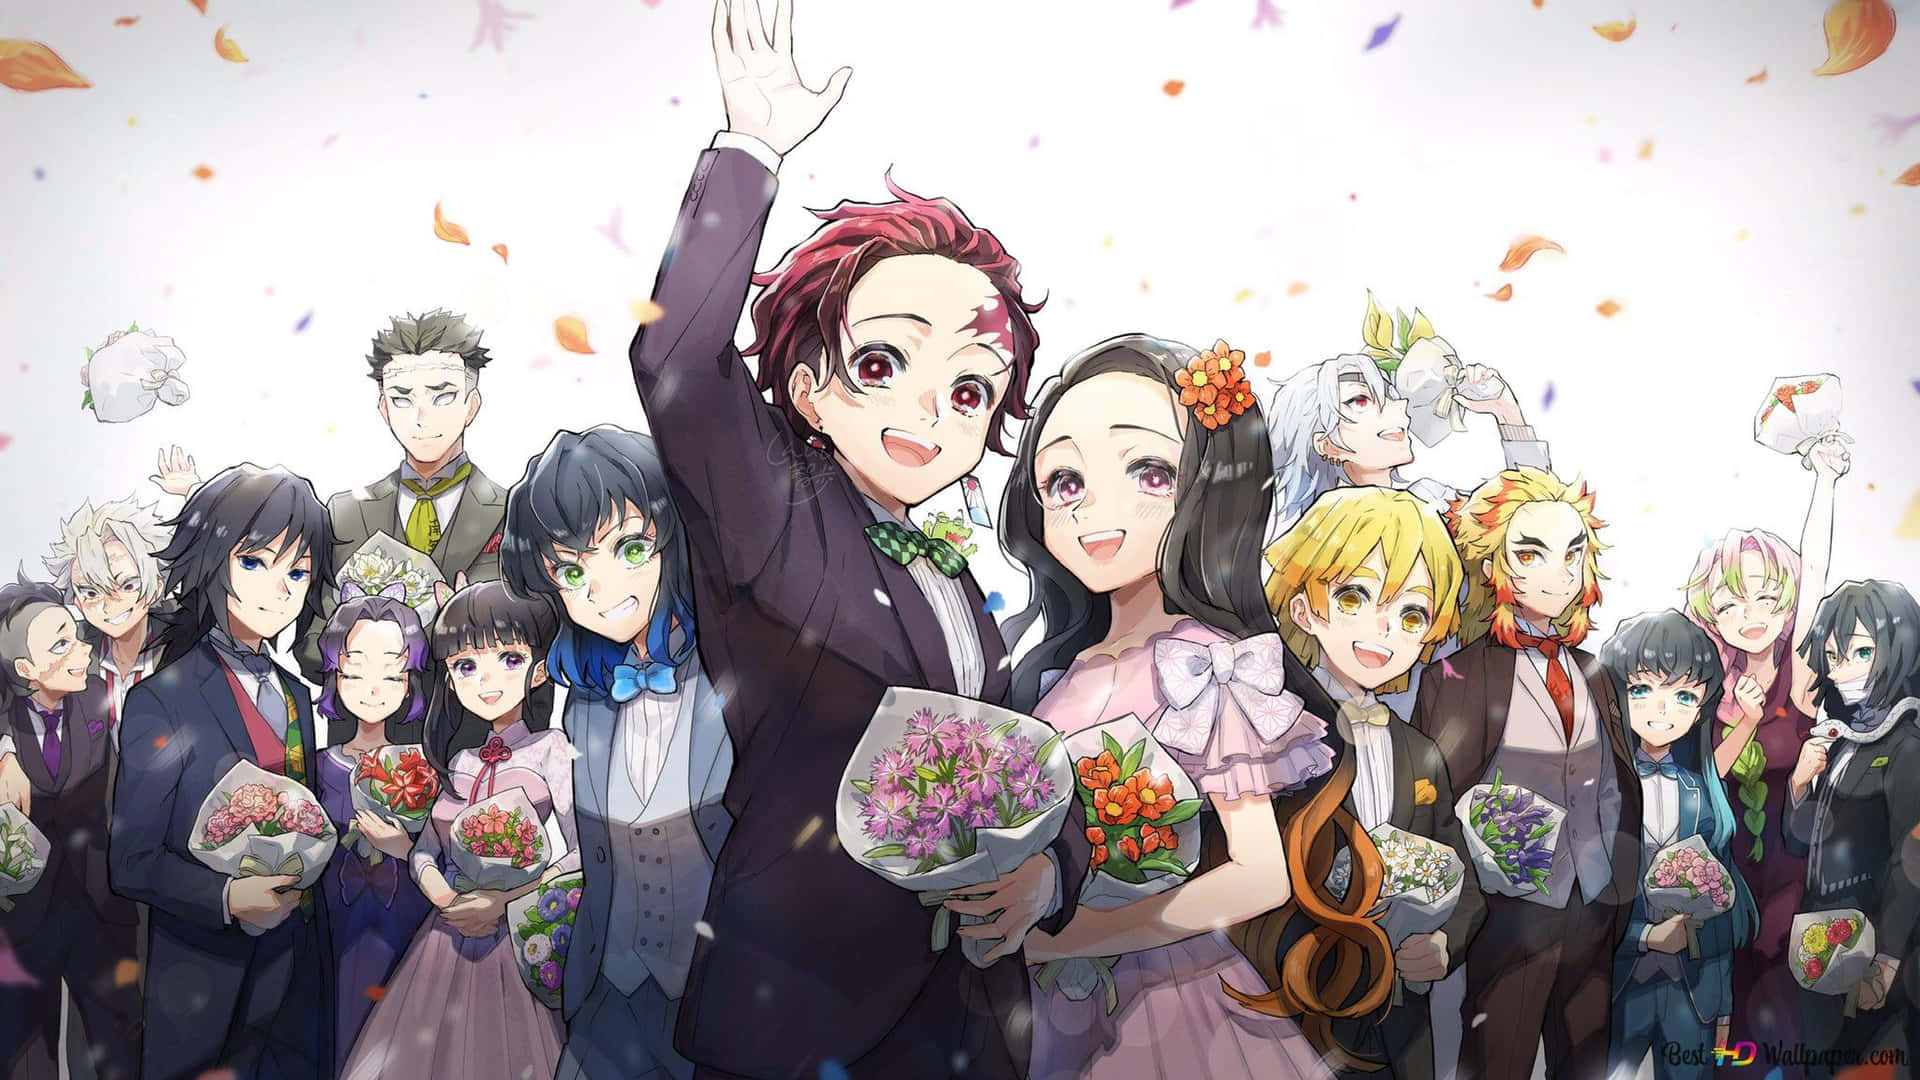 Einegruppe Von Anime-charakteren Mit Blumen In Ihren Händen. Wallpaper